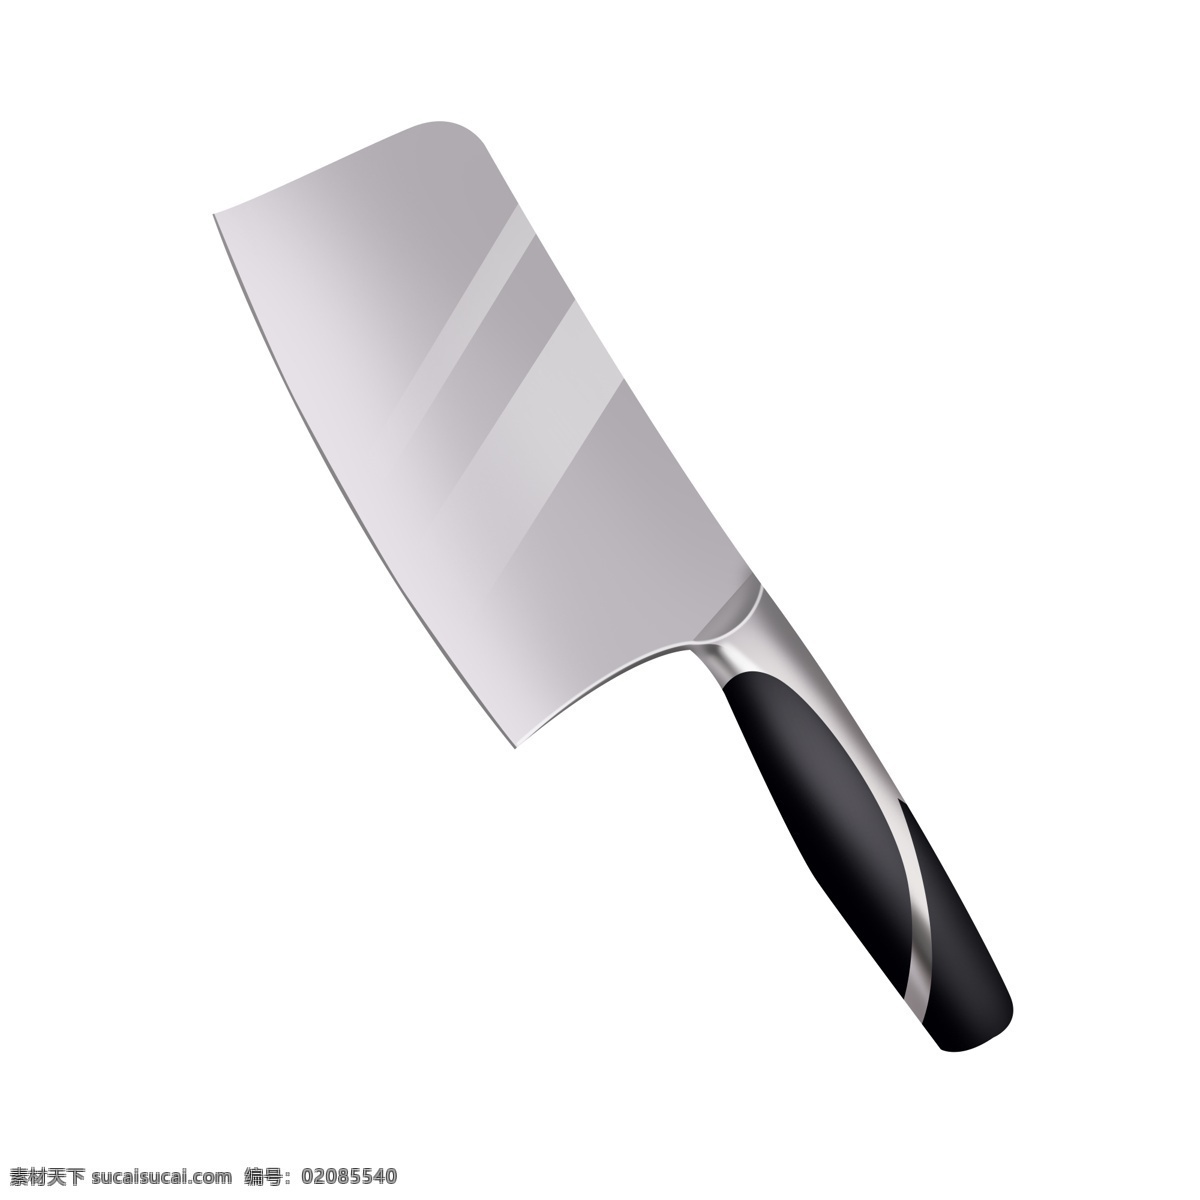 银灰色 精致 锋利 菜刀 透明 底 插画 灰色 锋利的刀 烹饪煮菜用品 厨房用具 厨房用品 插画插图 厨具